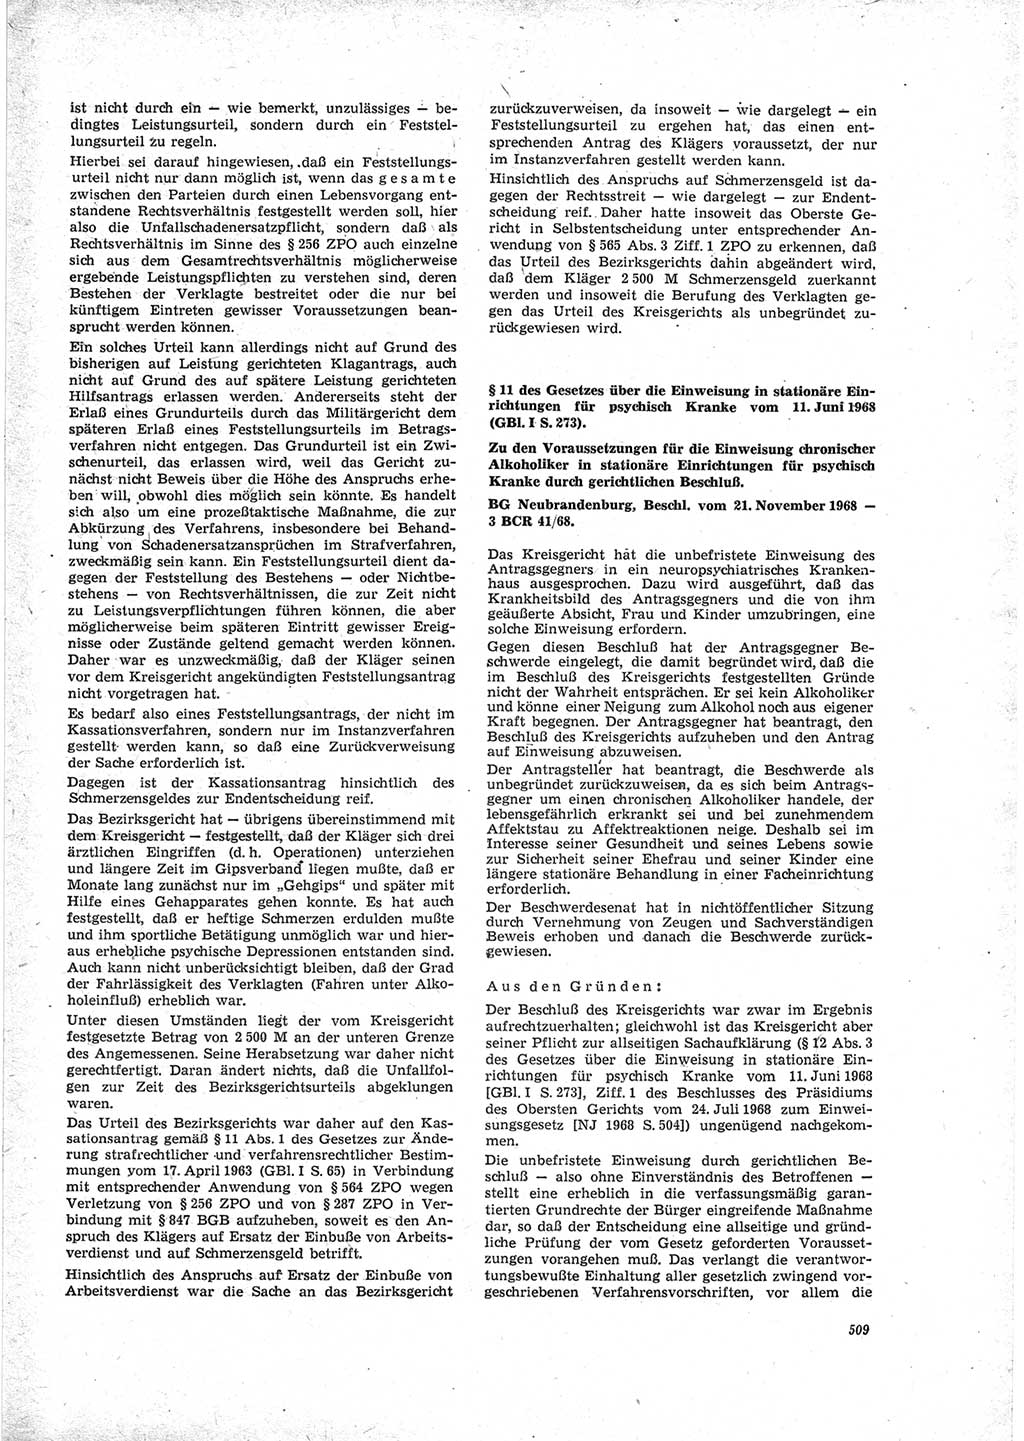 Neue Justiz (NJ), Zeitschrift für Recht und Rechtswissenschaft [Deutsche Demokratische Republik (DDR)], 23. Jahrgang 1969, Seite 509 (NJ DDR 1969, S. 509)